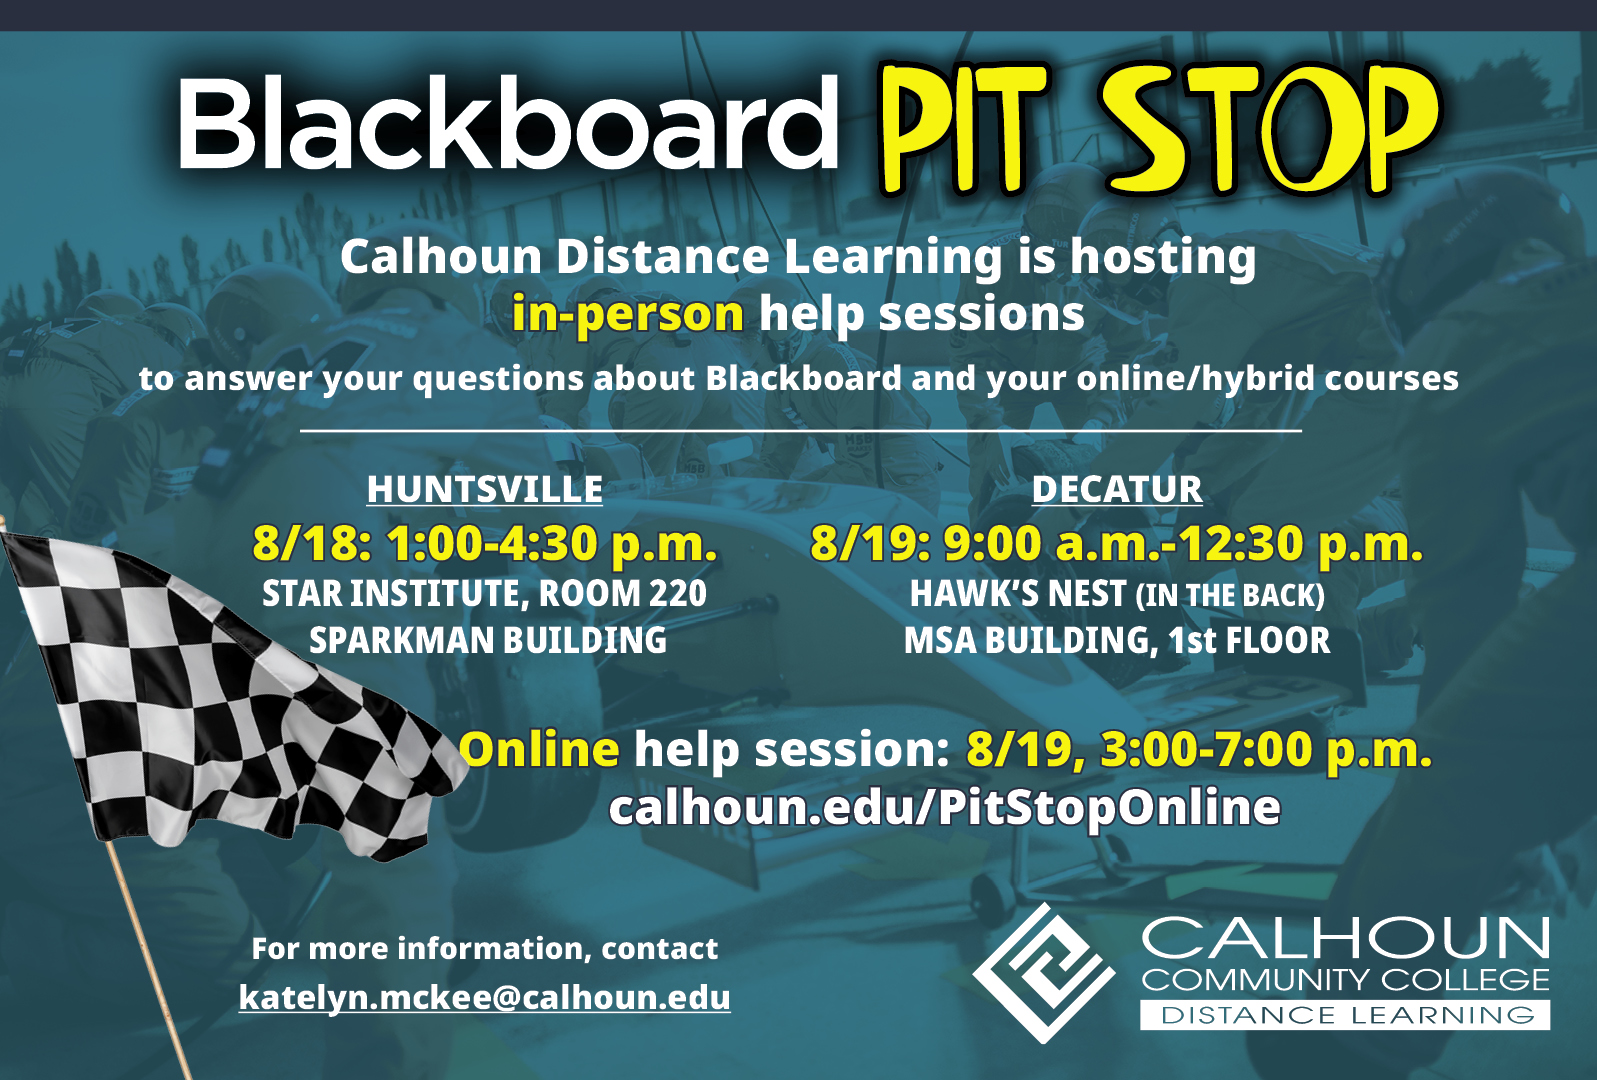 Blackboard Pit Stop - Online